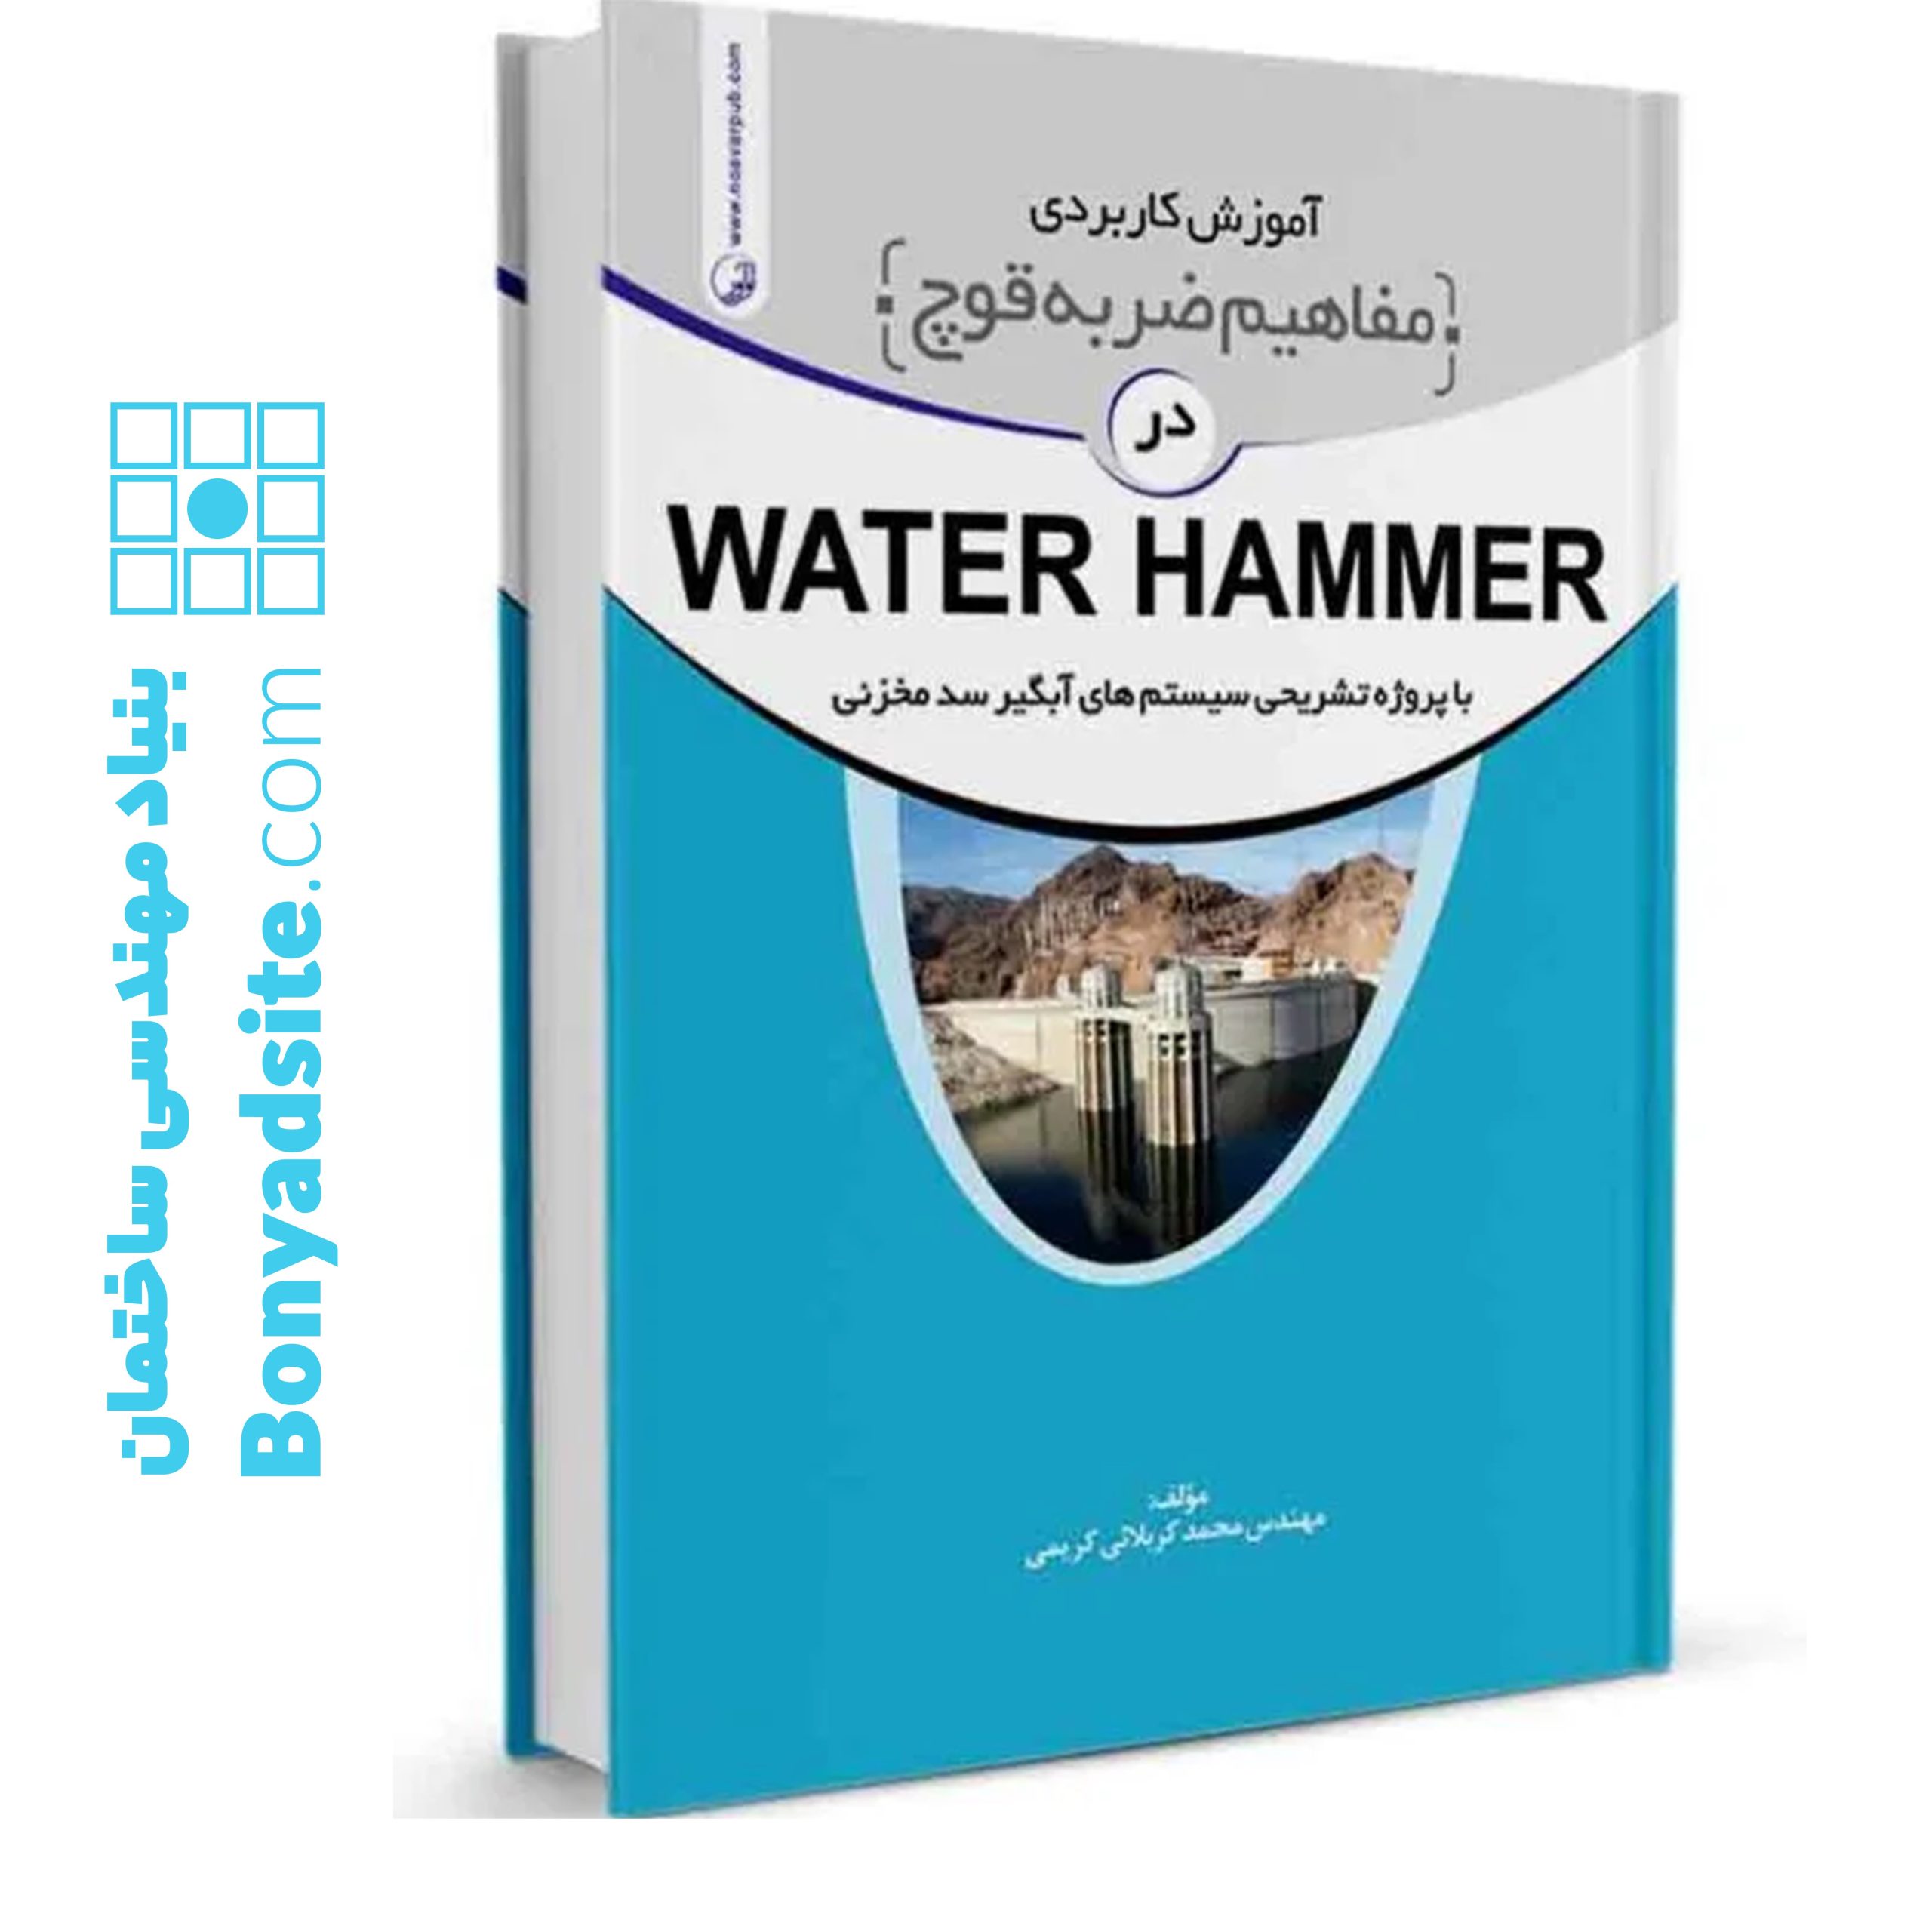 کتاب آموزش کاربردی مفاهیم ضربه قوچ (water hammer)